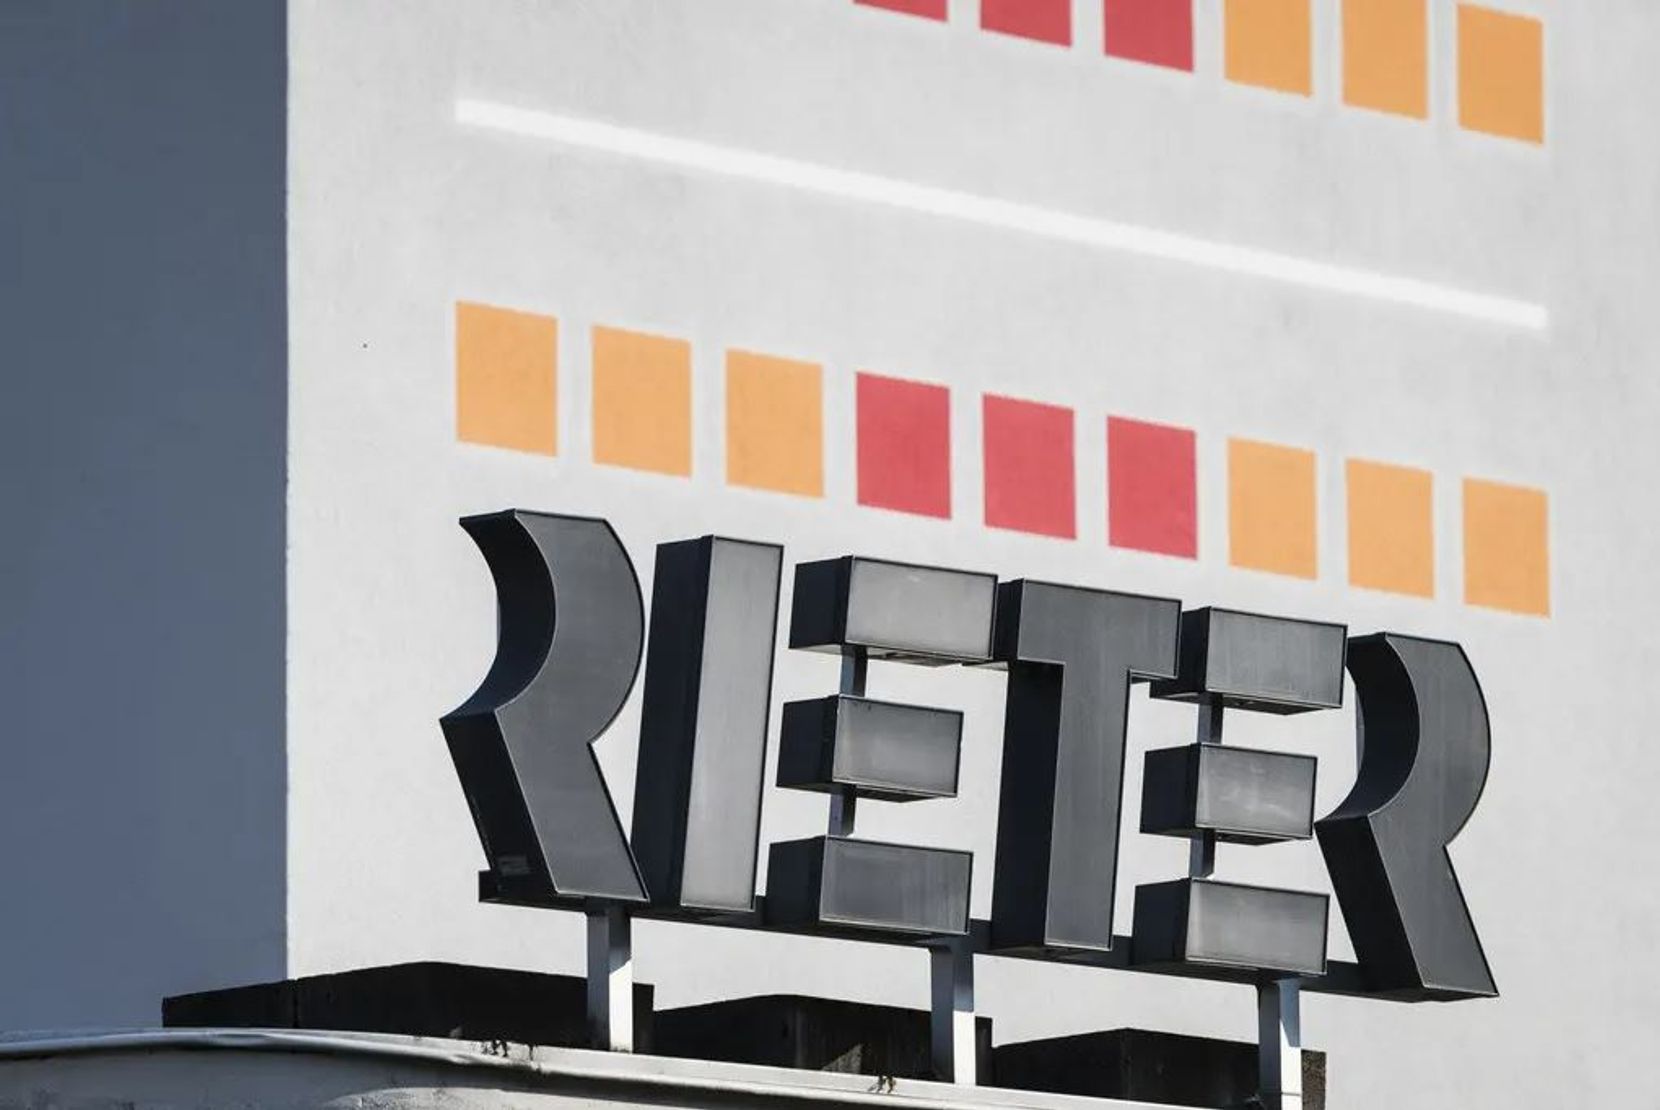 Man sieht das Logo der Firma Rieter auf einem Firmengebäude.